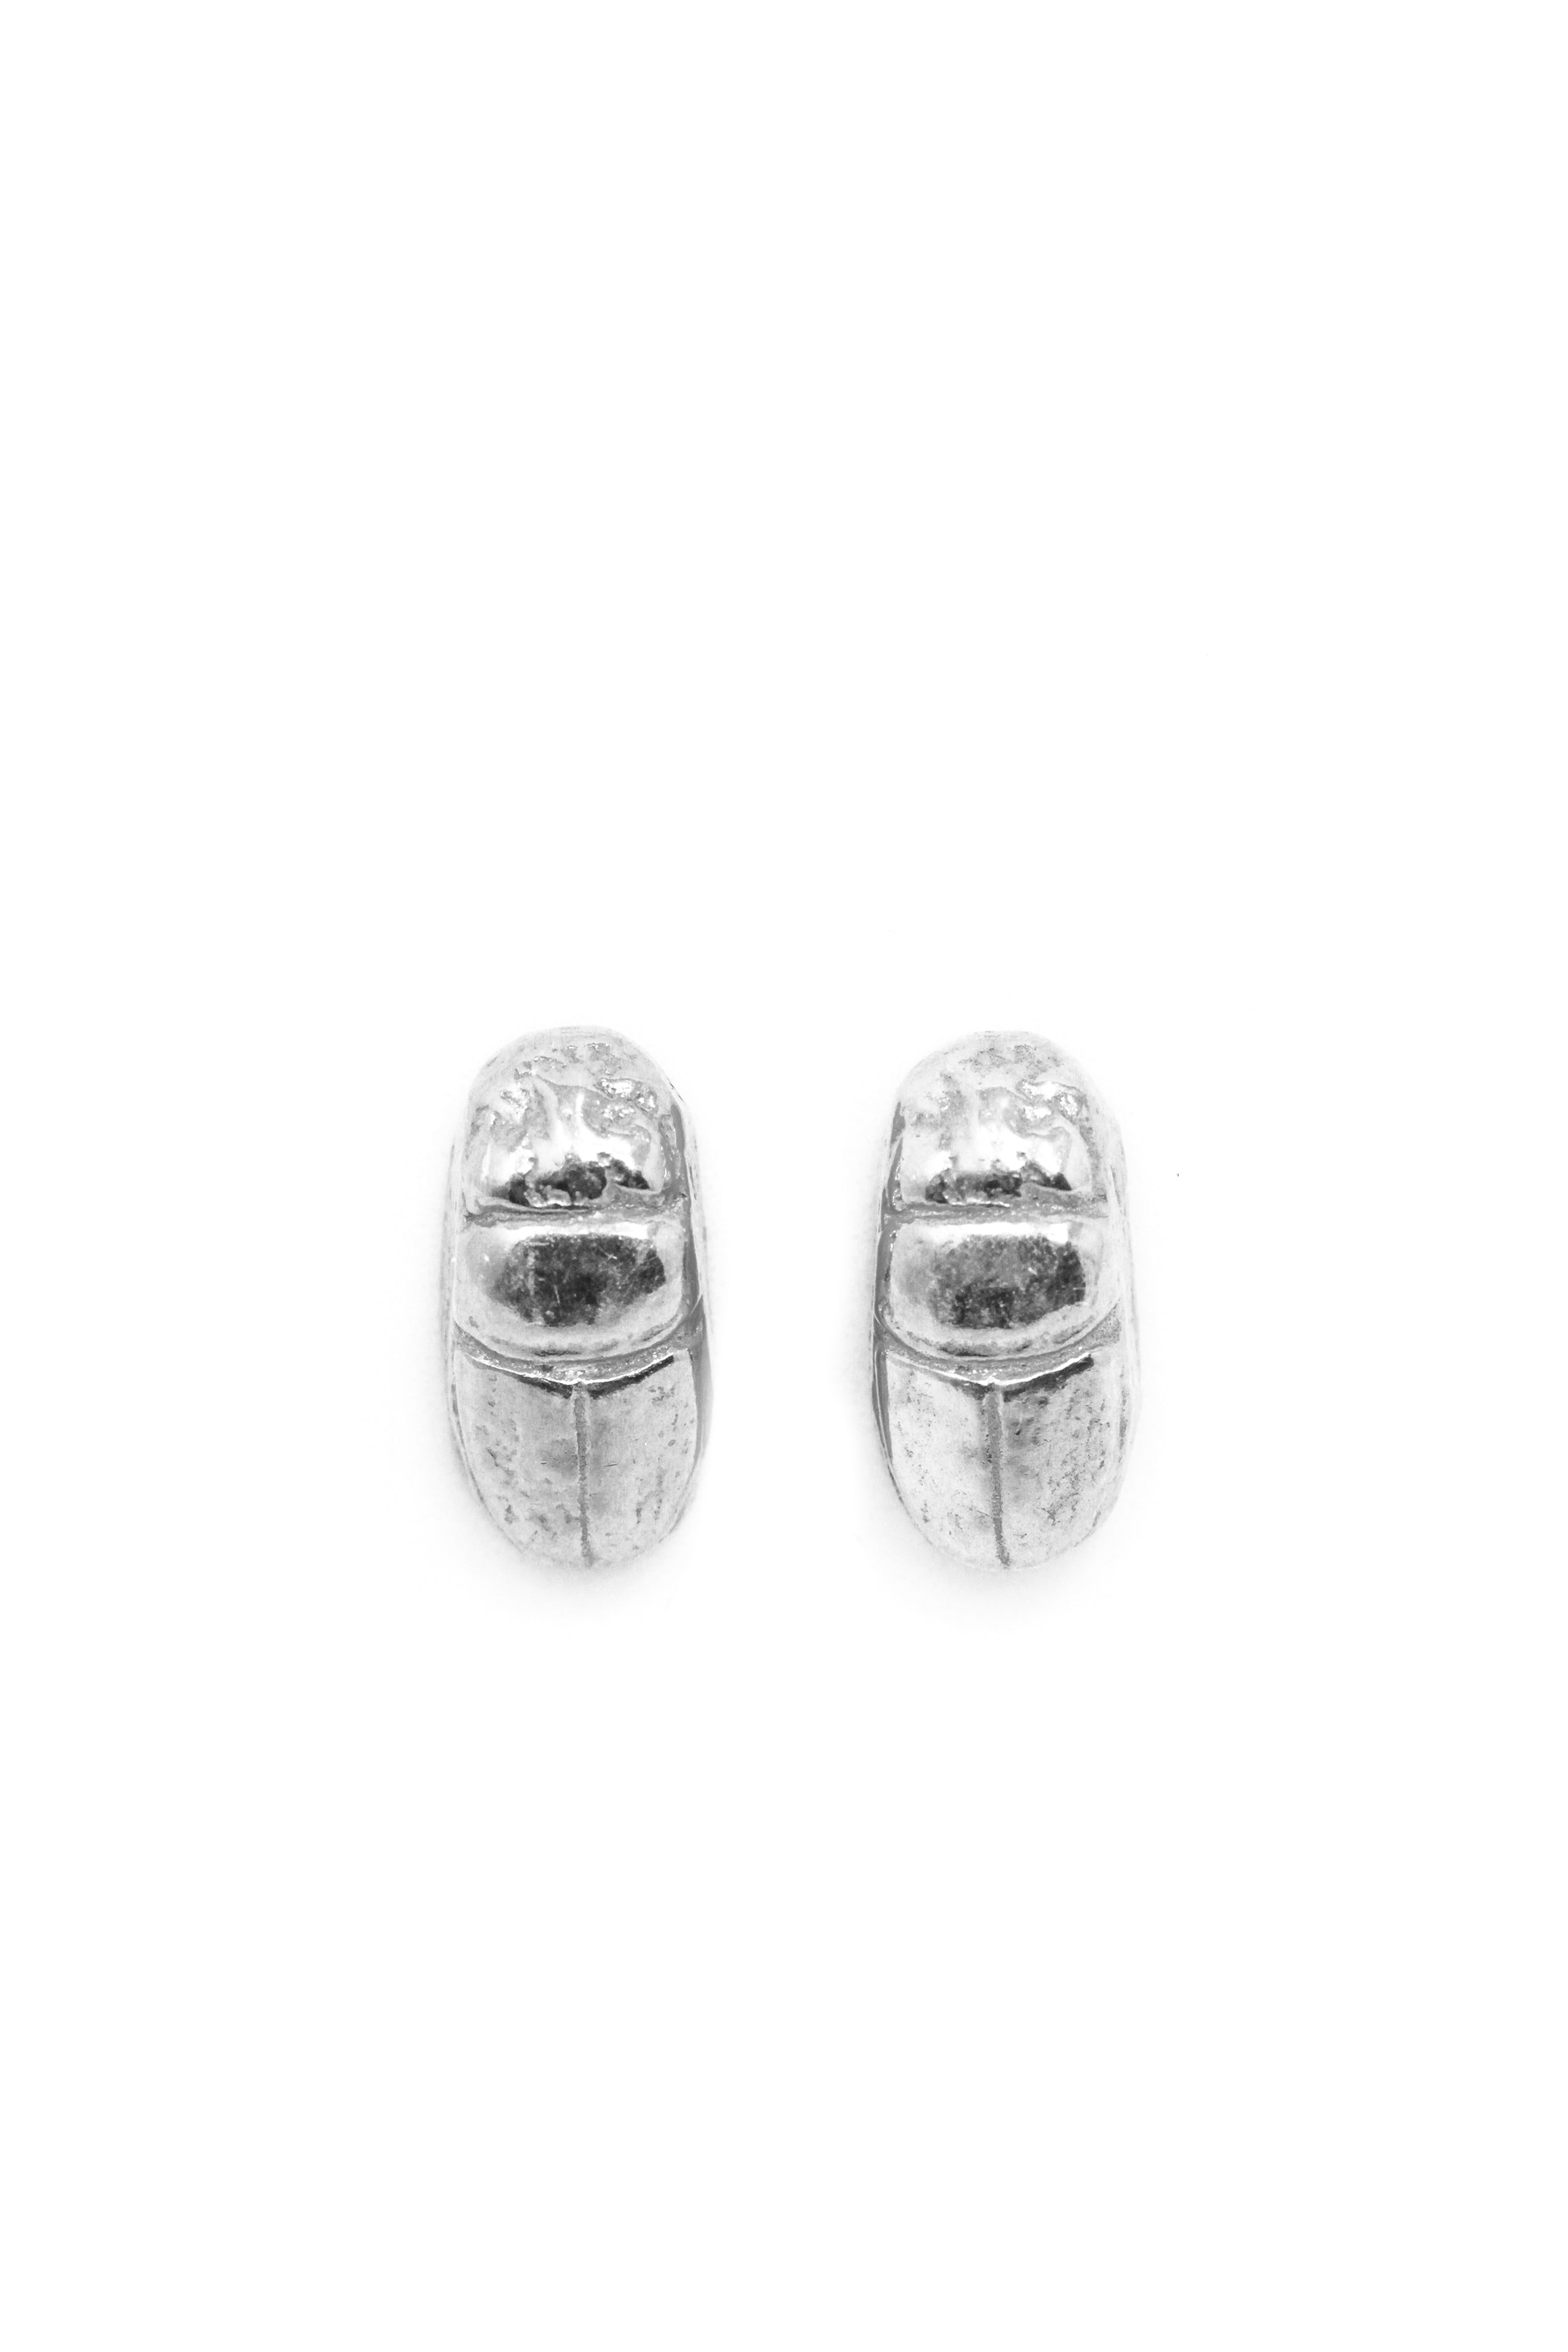 THE SCARAB Beetle Stud Earrings Sterling Silver